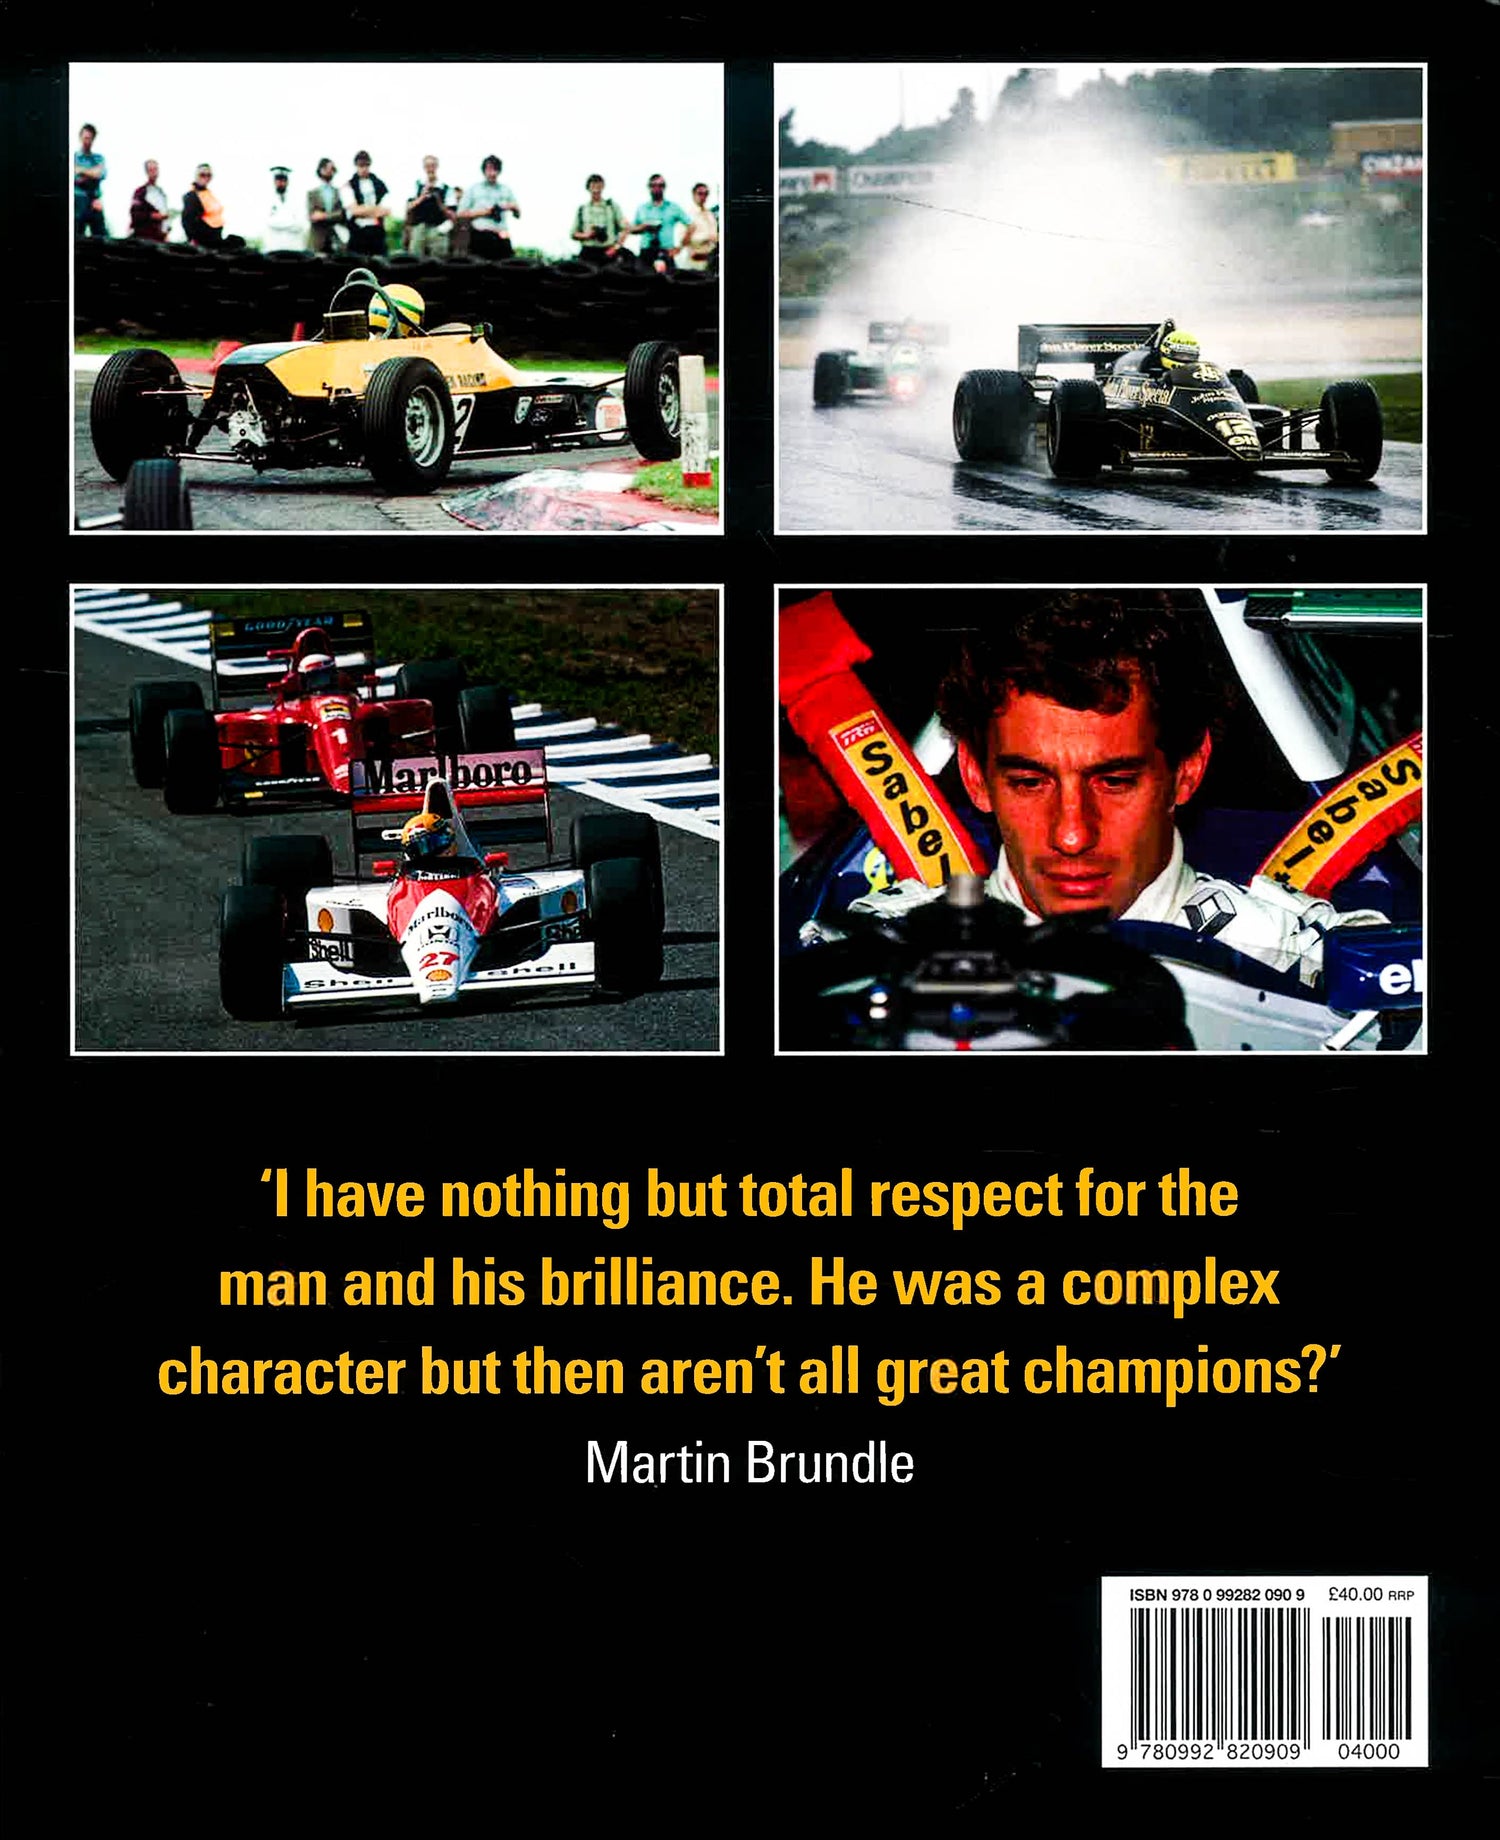 Ayrton Senna: the Messiah of Motor Racing